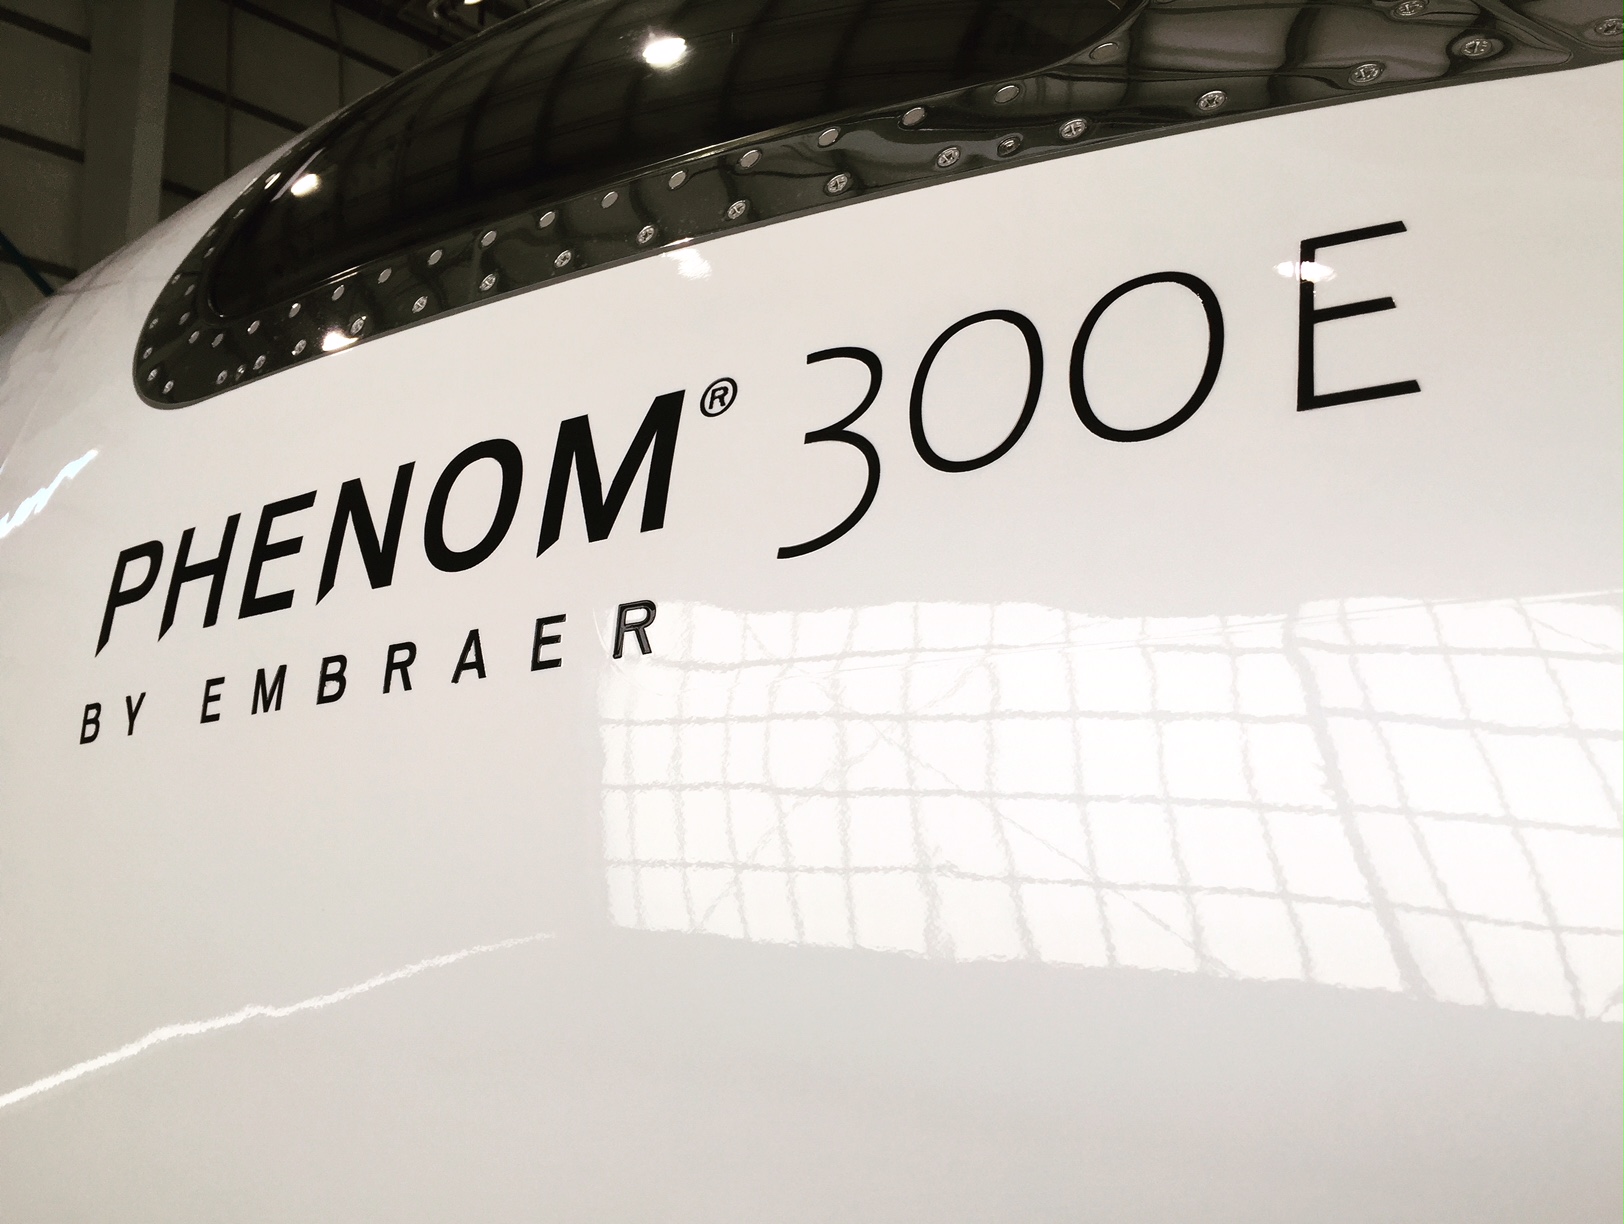 Phenom 300E